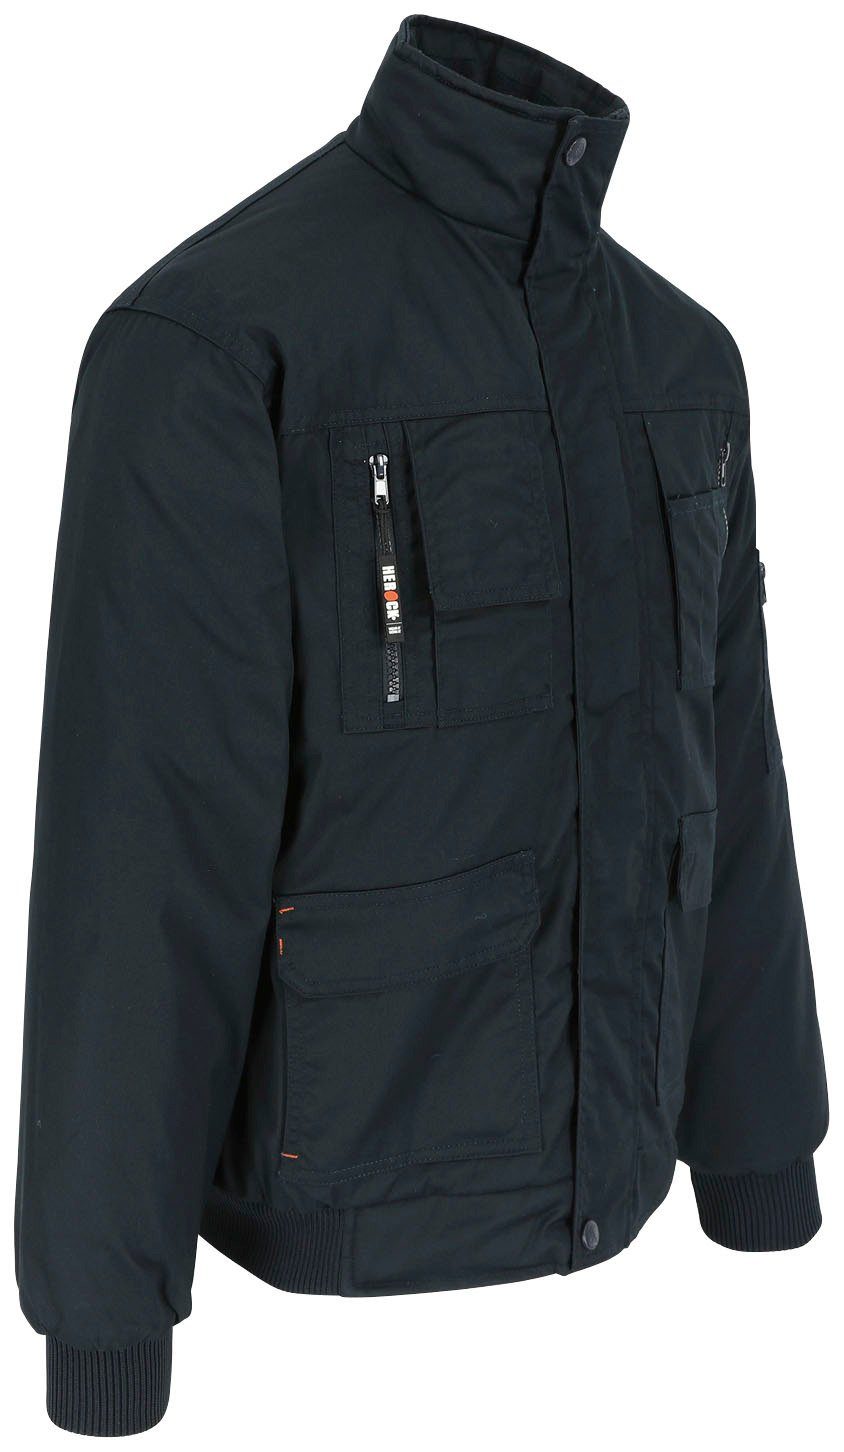 Fleece-Kragen, Taschen, Wasserabweisend marine Jacke viele Herock Arbeitsjacke robust, viele Typhon Farben mit